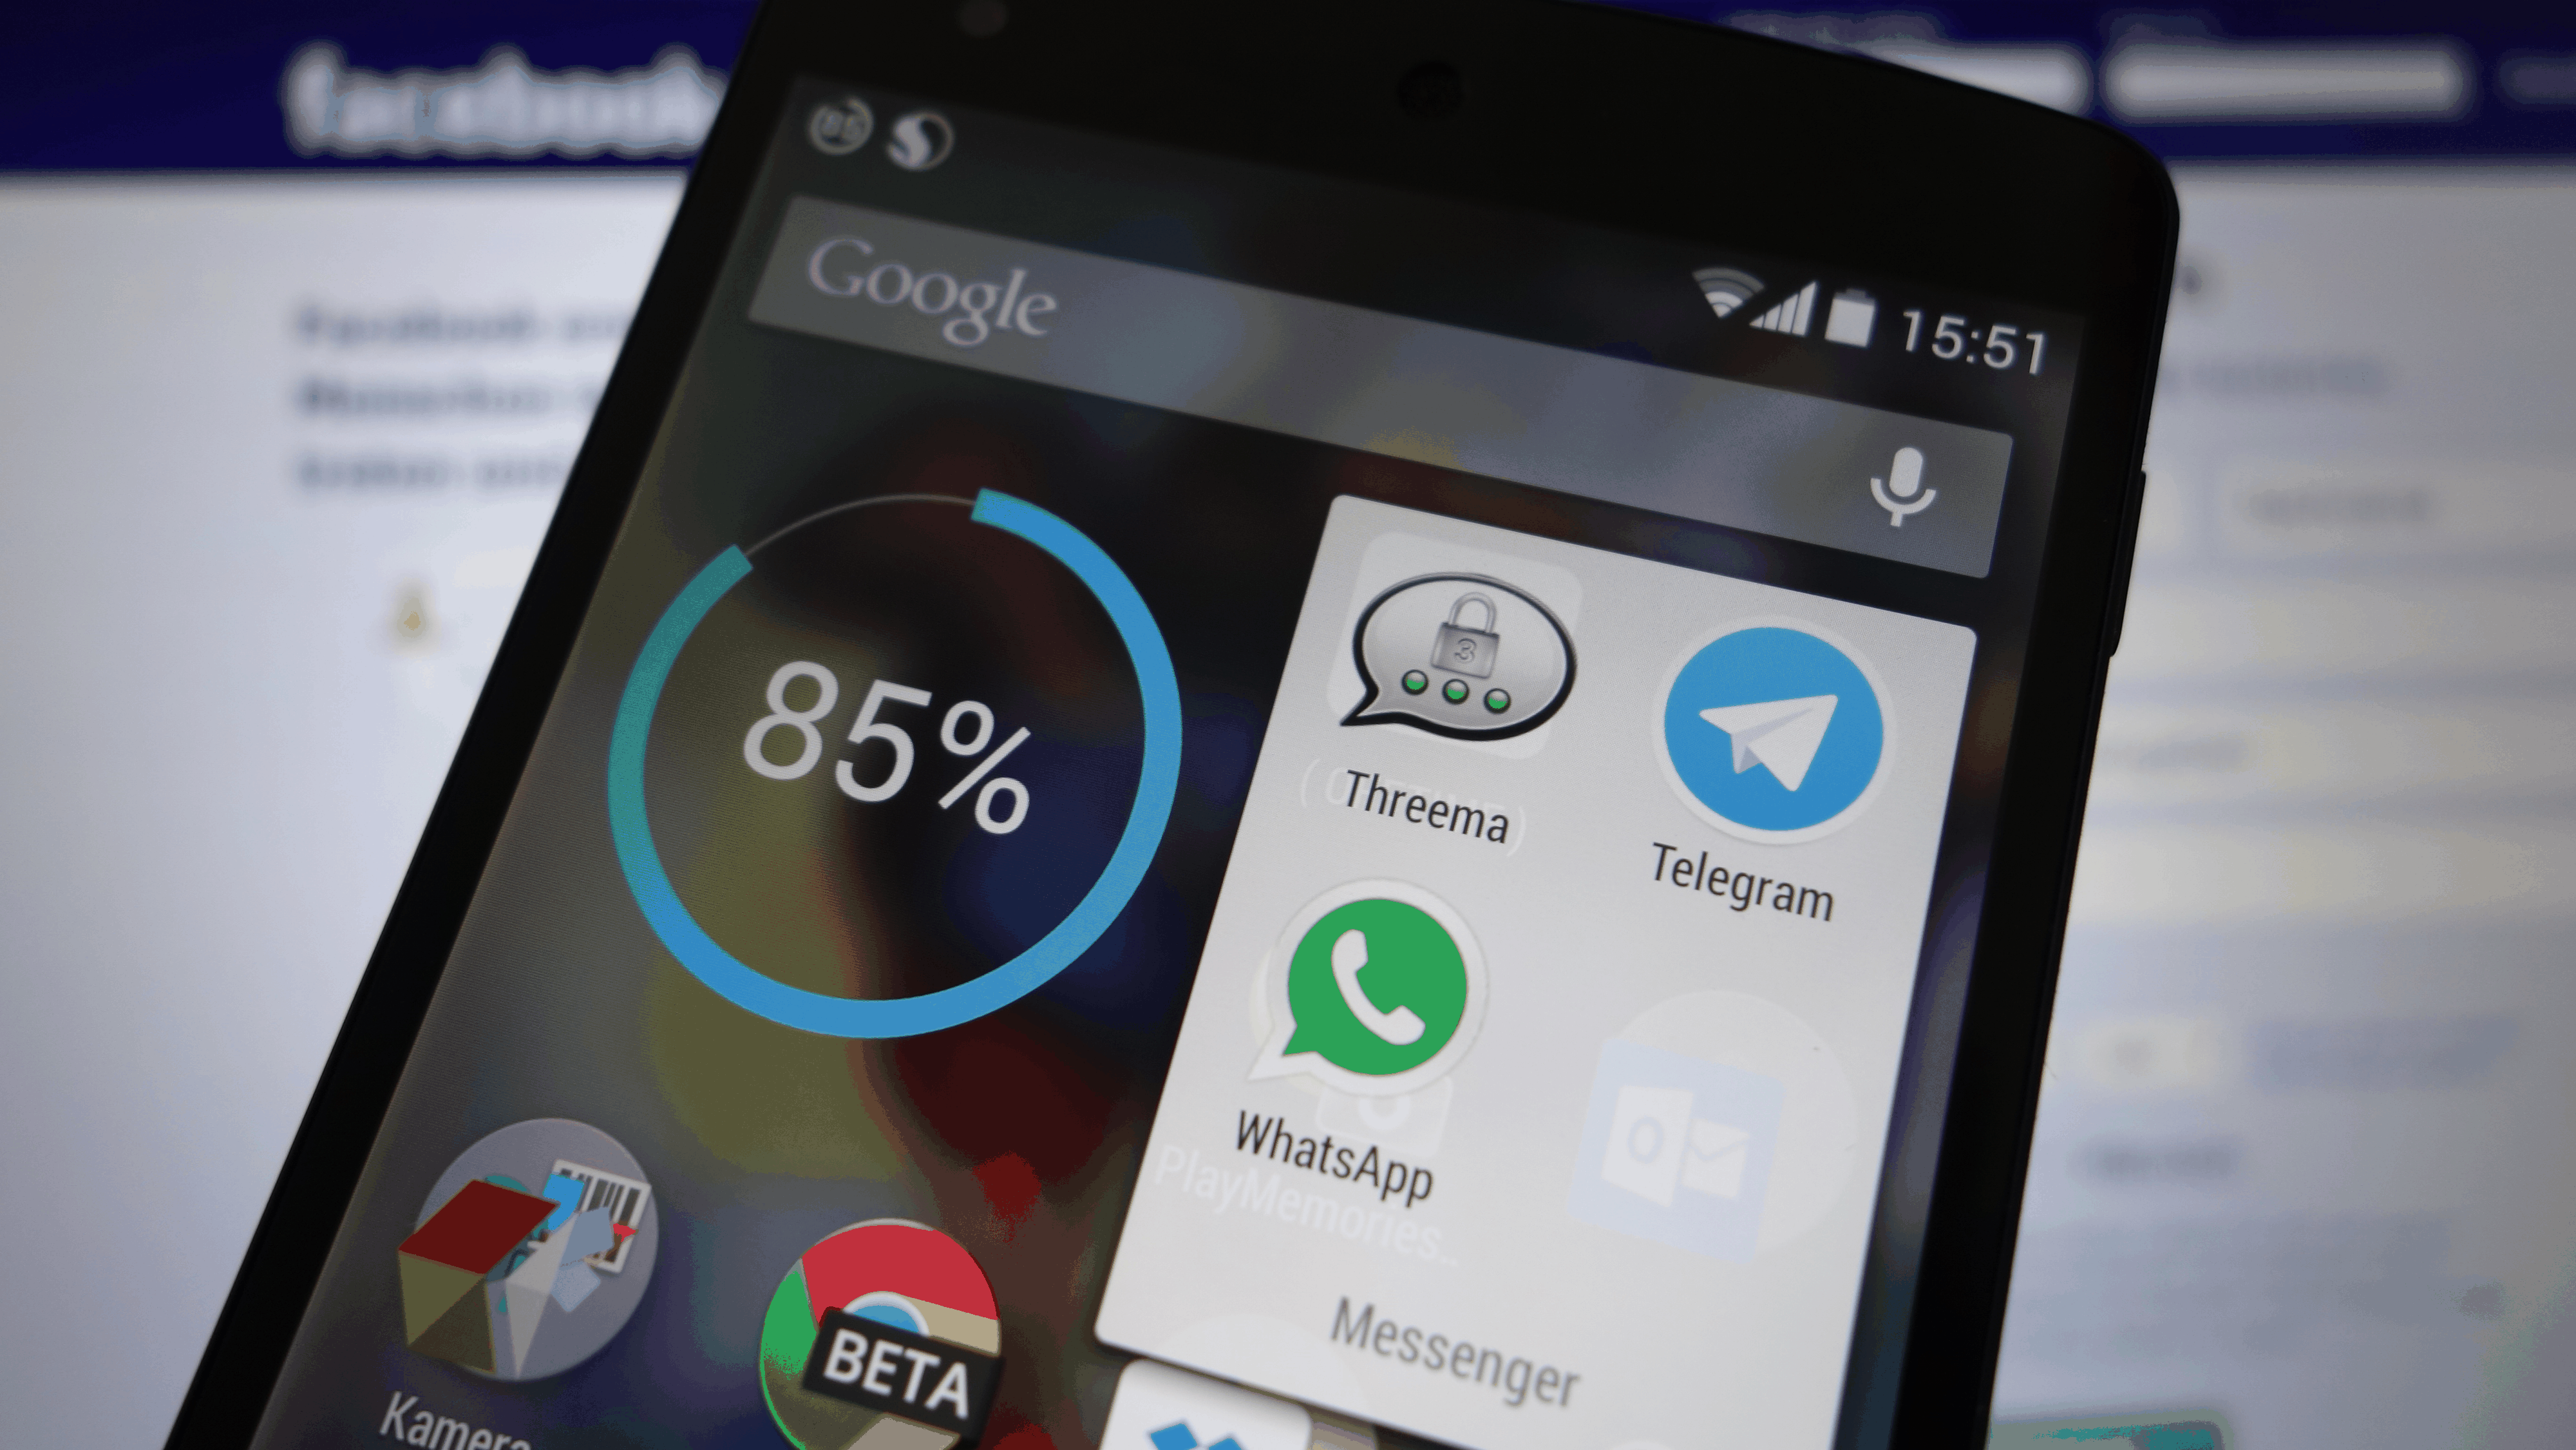 Threema, Telegram und WhatsApp: Drei Messenger-Apps, die vom sogenannten Islamischen Staat zur verschlüsselten Kommunikation empfohlen werden.&nbsp;